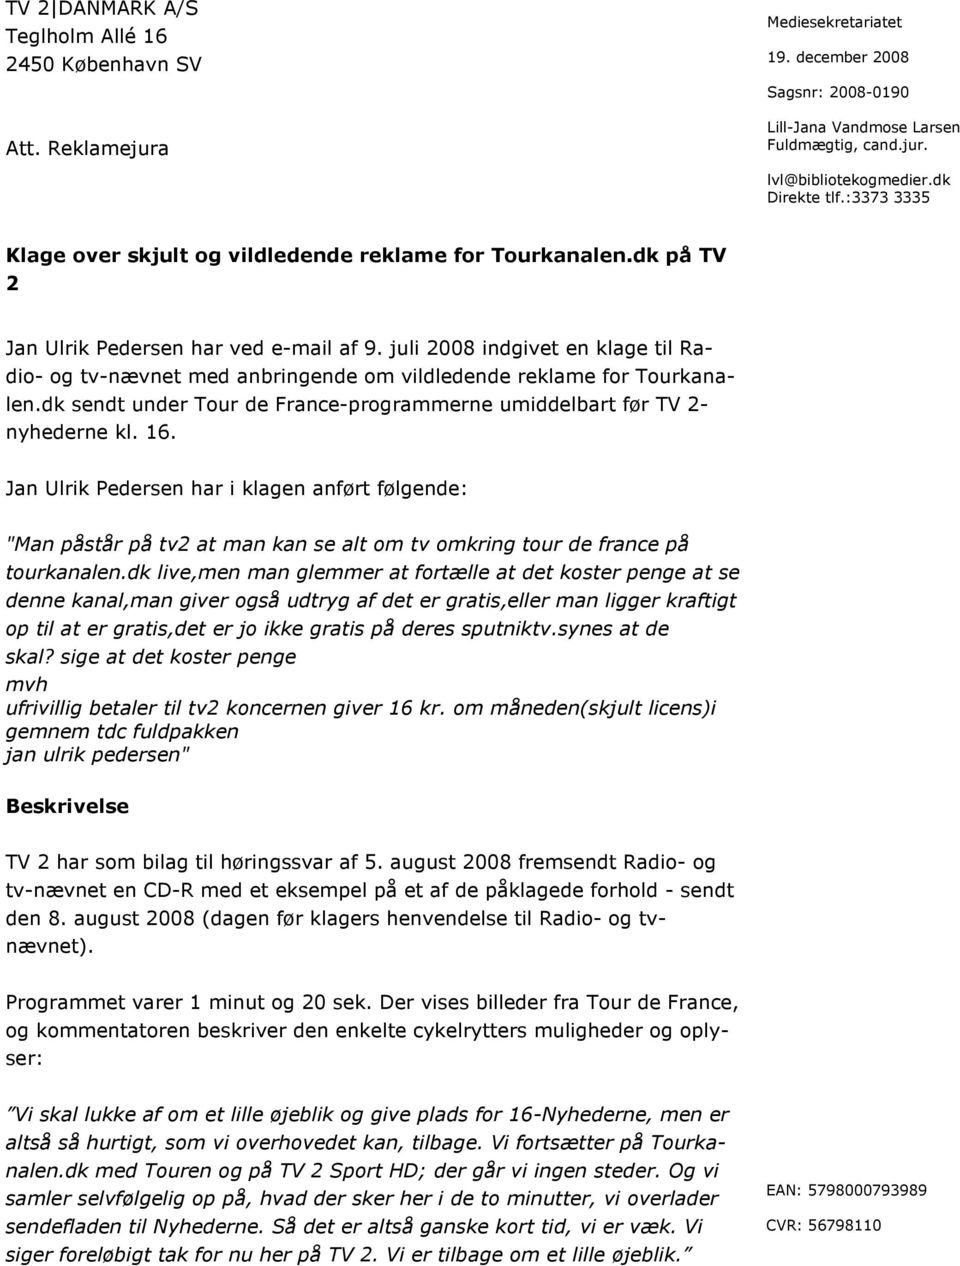 juli 2008 indgivet en klage til Radio- og tv-nævnet med anbringende om vildledende reklame for Tourkanalen.dk sendt under Tour de France-programmerne umiddelbart før TV 2- nyhederne kl. 16.